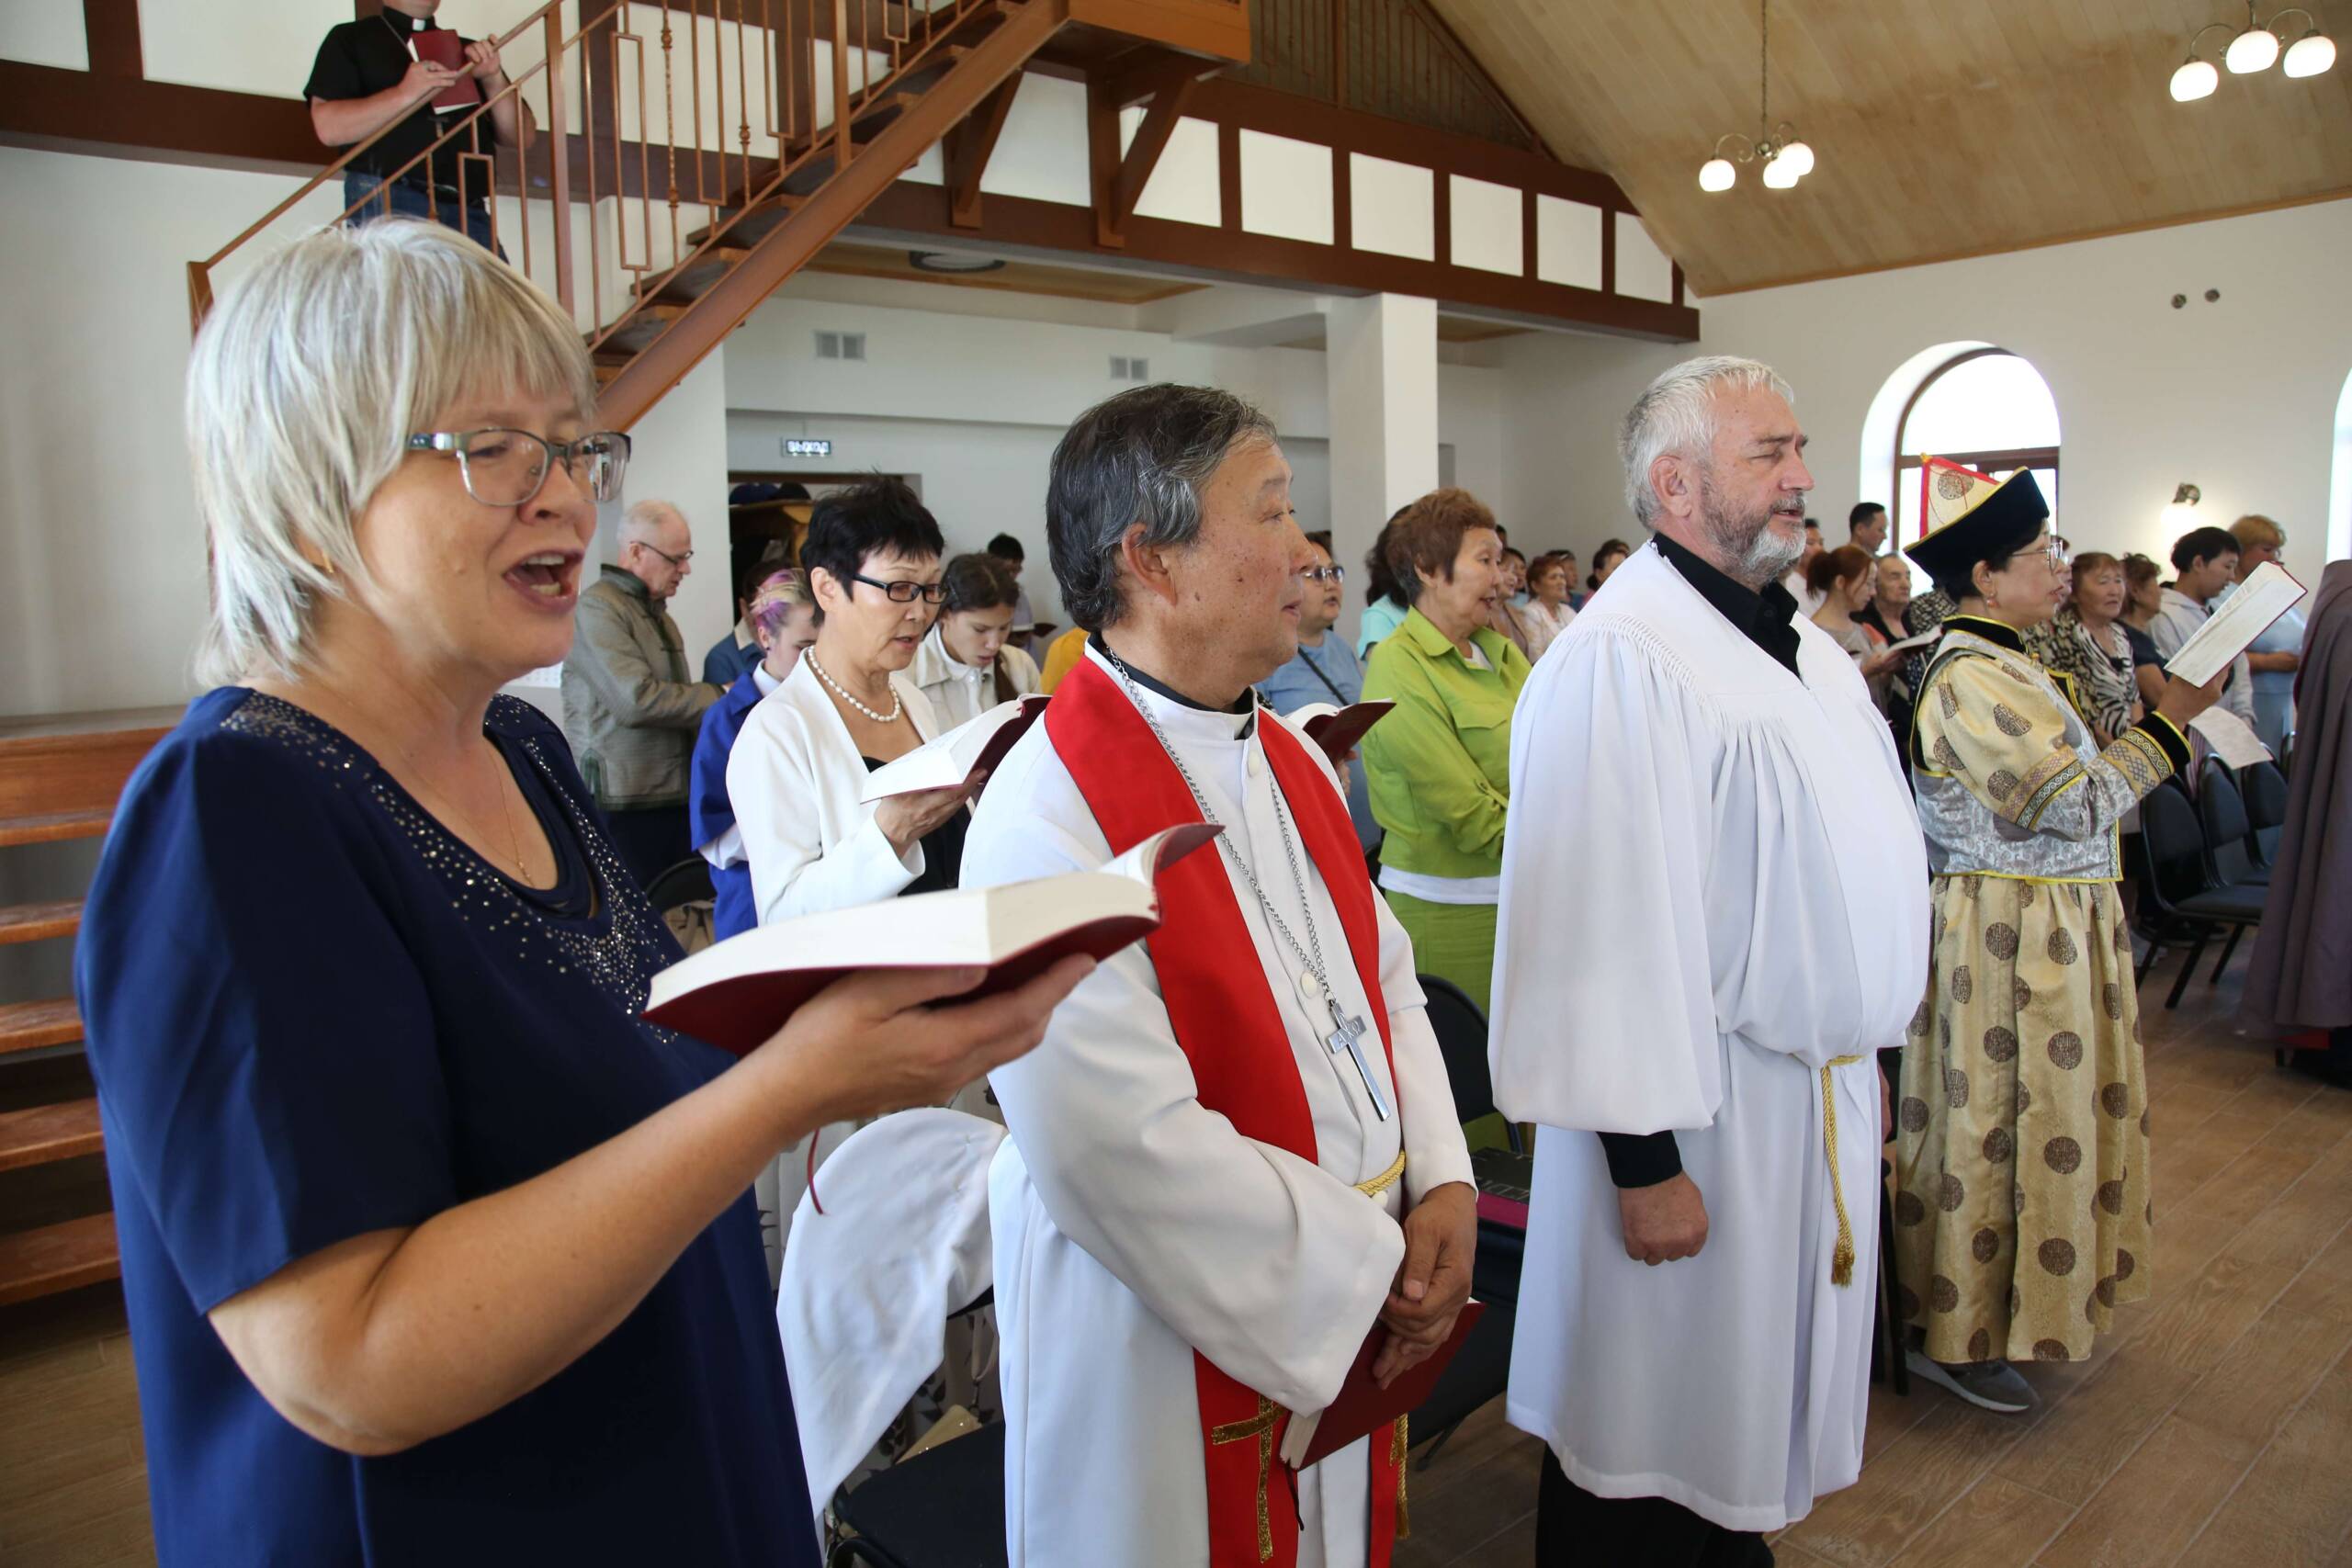 Ihmiset laulavat seisaaltaan. Etualalla nainen ja hänen vierellään kaksi papin albaan pukeutunutta miestä. Kirkkosali on vaalea ja valoisa.